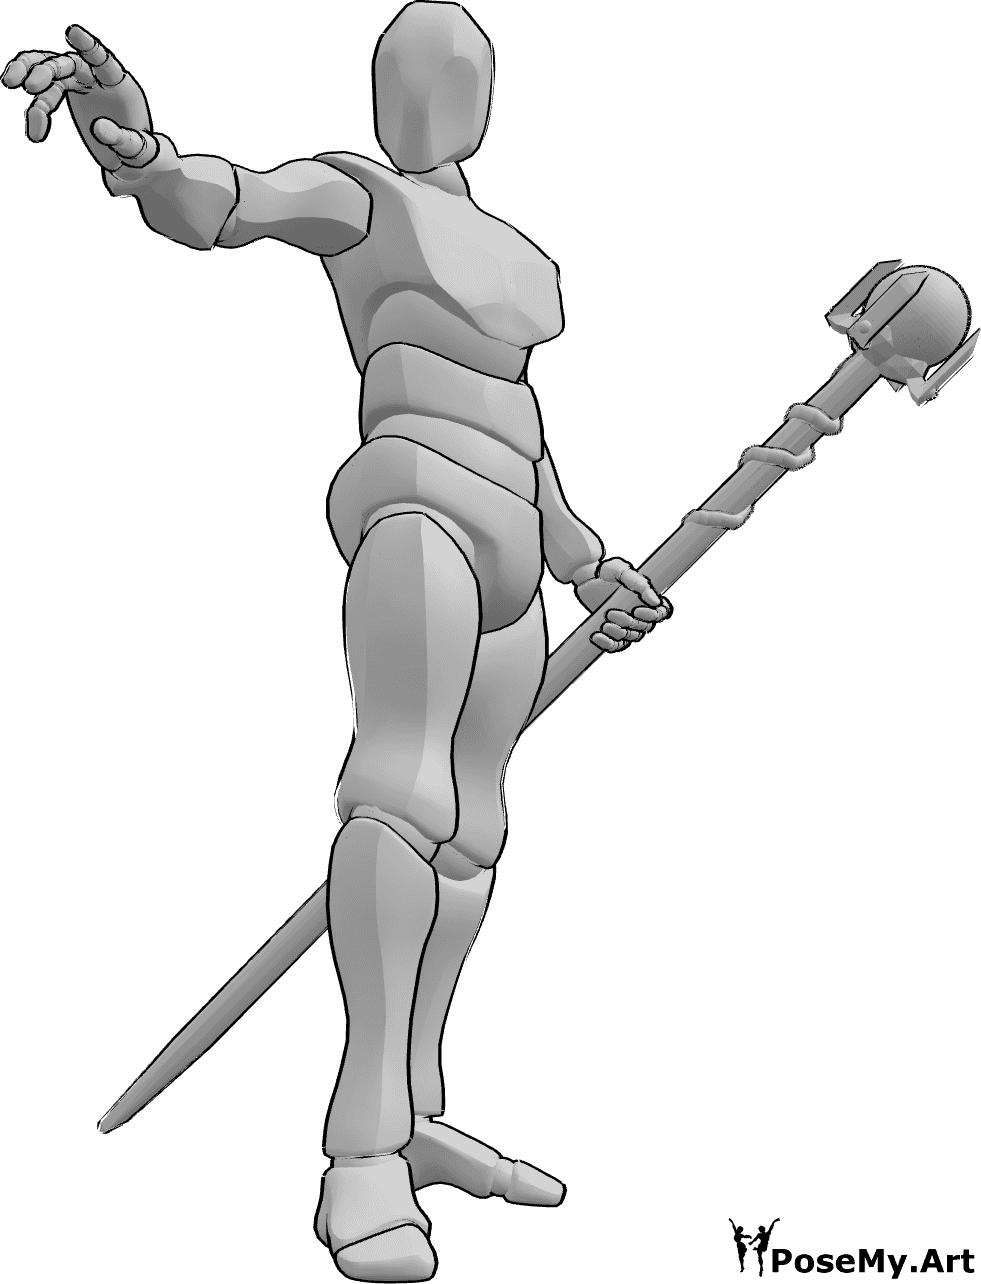 Référence des poses- Pose de l'homme sorcier - L'homme sorcier tient un bâton dans sa main gauche et jette un sort de sa main droite.